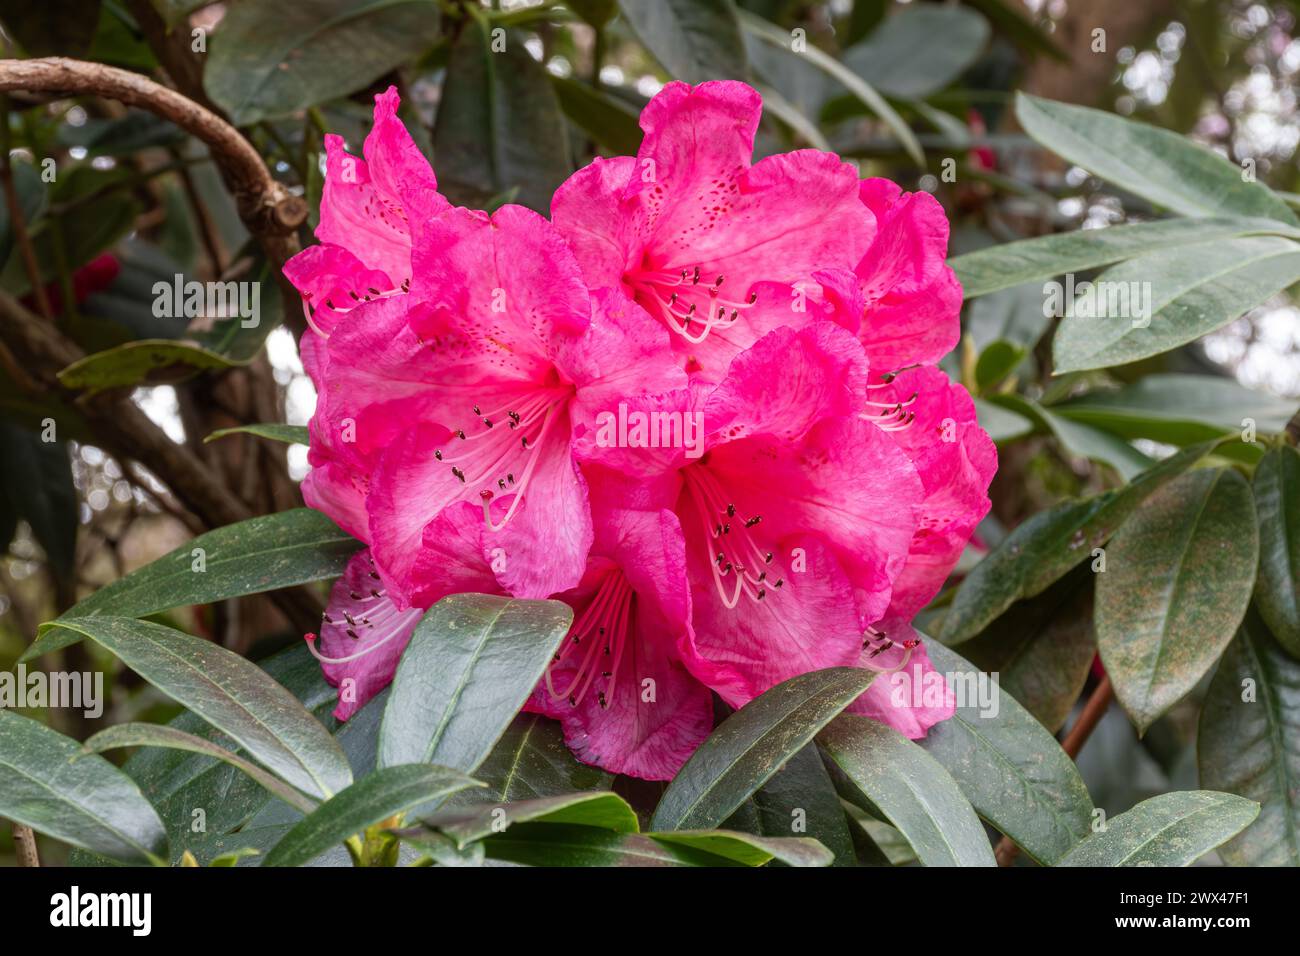 Rhododendron 'Gilian' fleurit, arbuste avec des fleurs rose foncé en mars ou au printemps, Angleterre, Royaume-Uni Banque D'Images